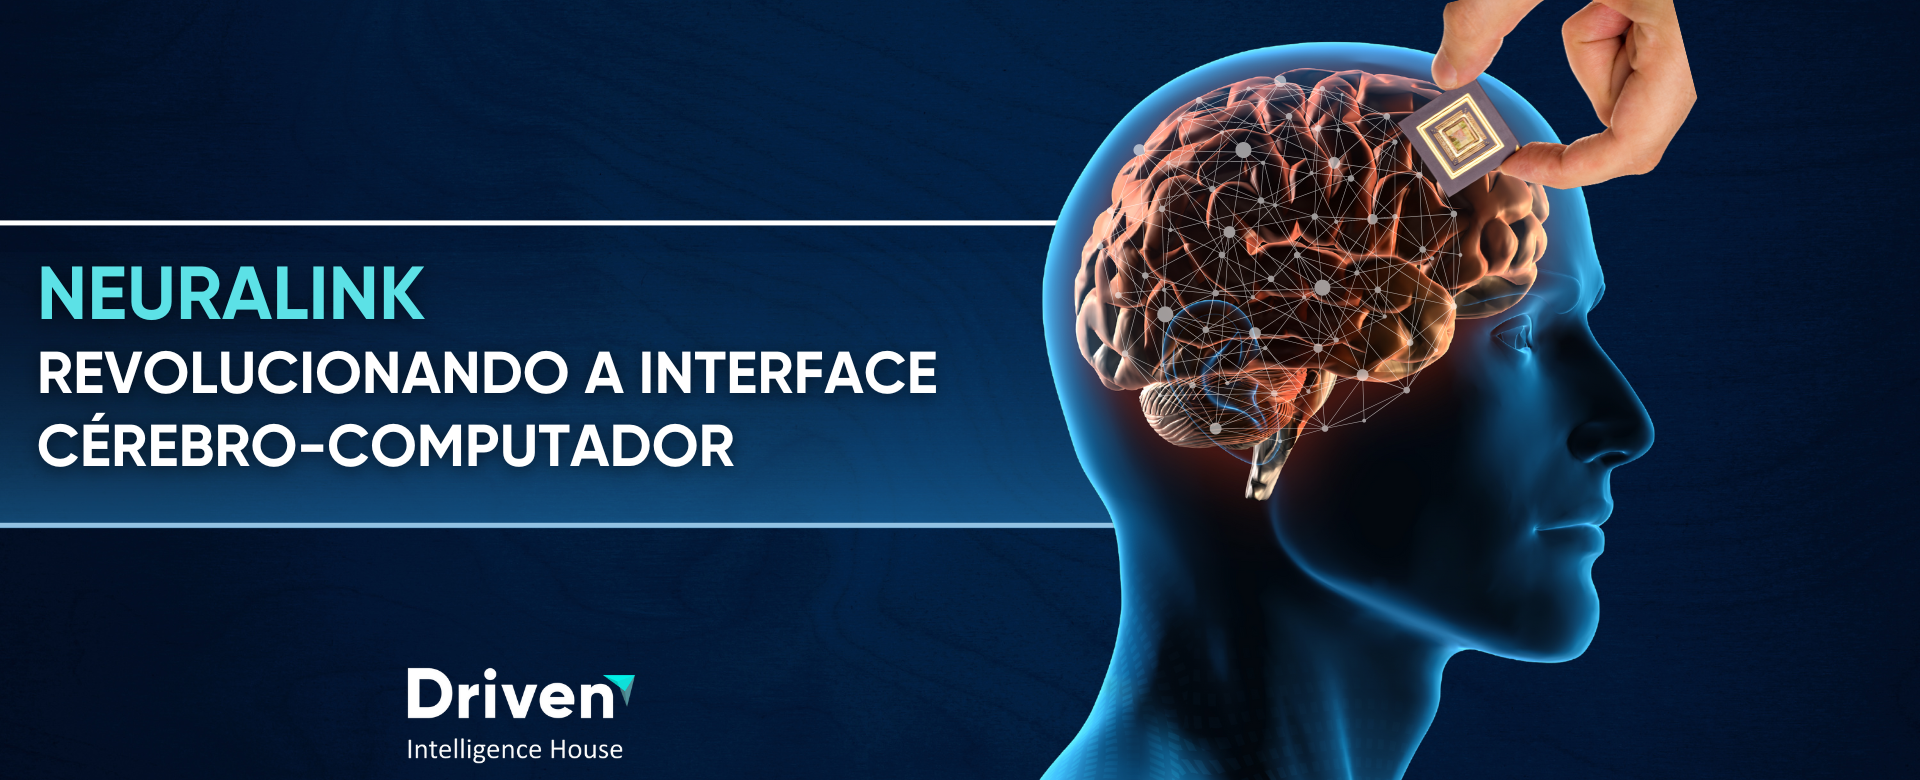 Neuralink alcançou um marco significativo no desenvolvimento de interfaces cérebro-computador ao realizar com sucesso o implante do chip cerebral.